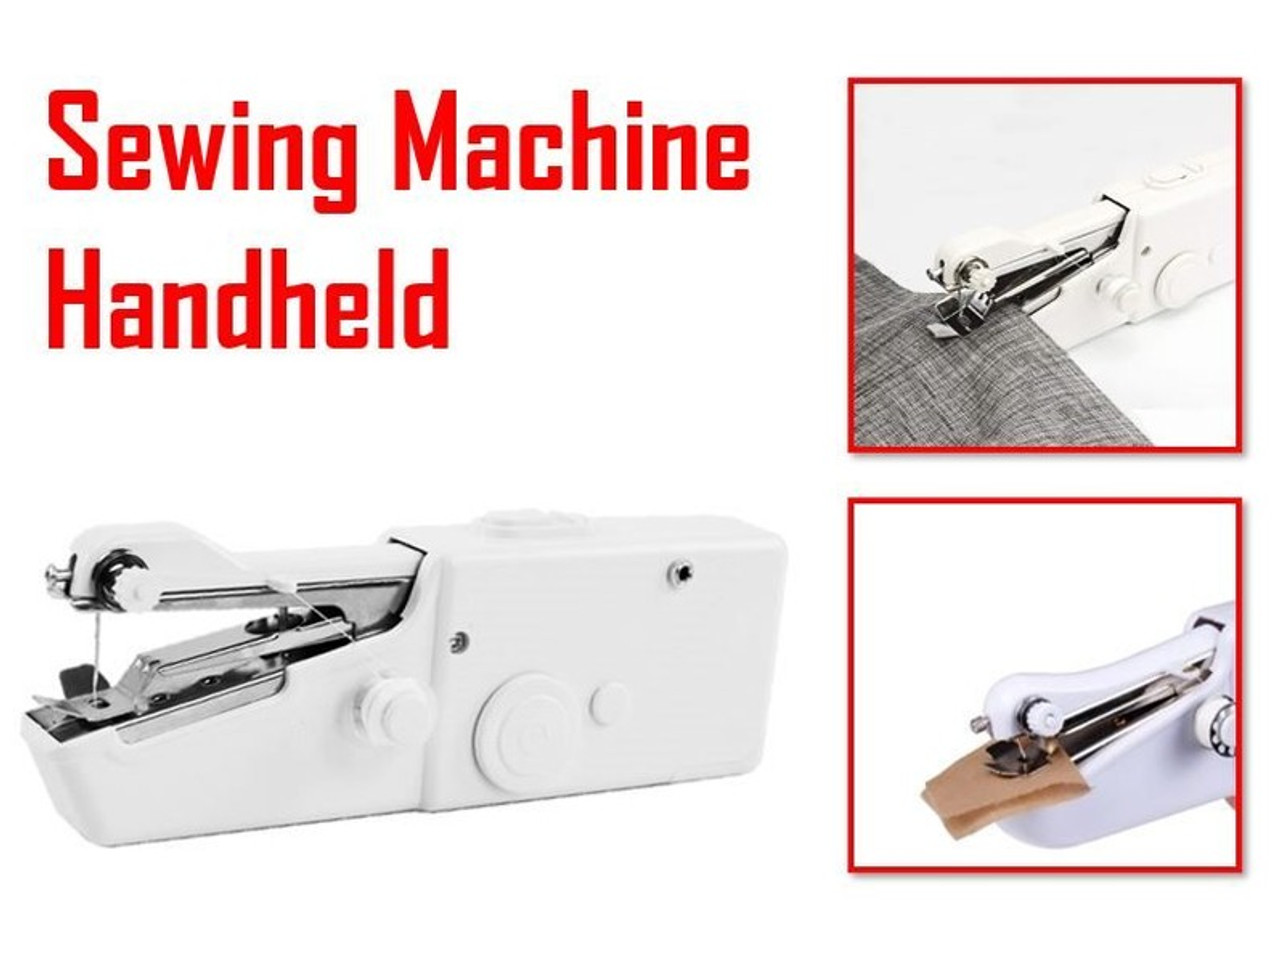 Handy Stitch-Handheld sewing machine